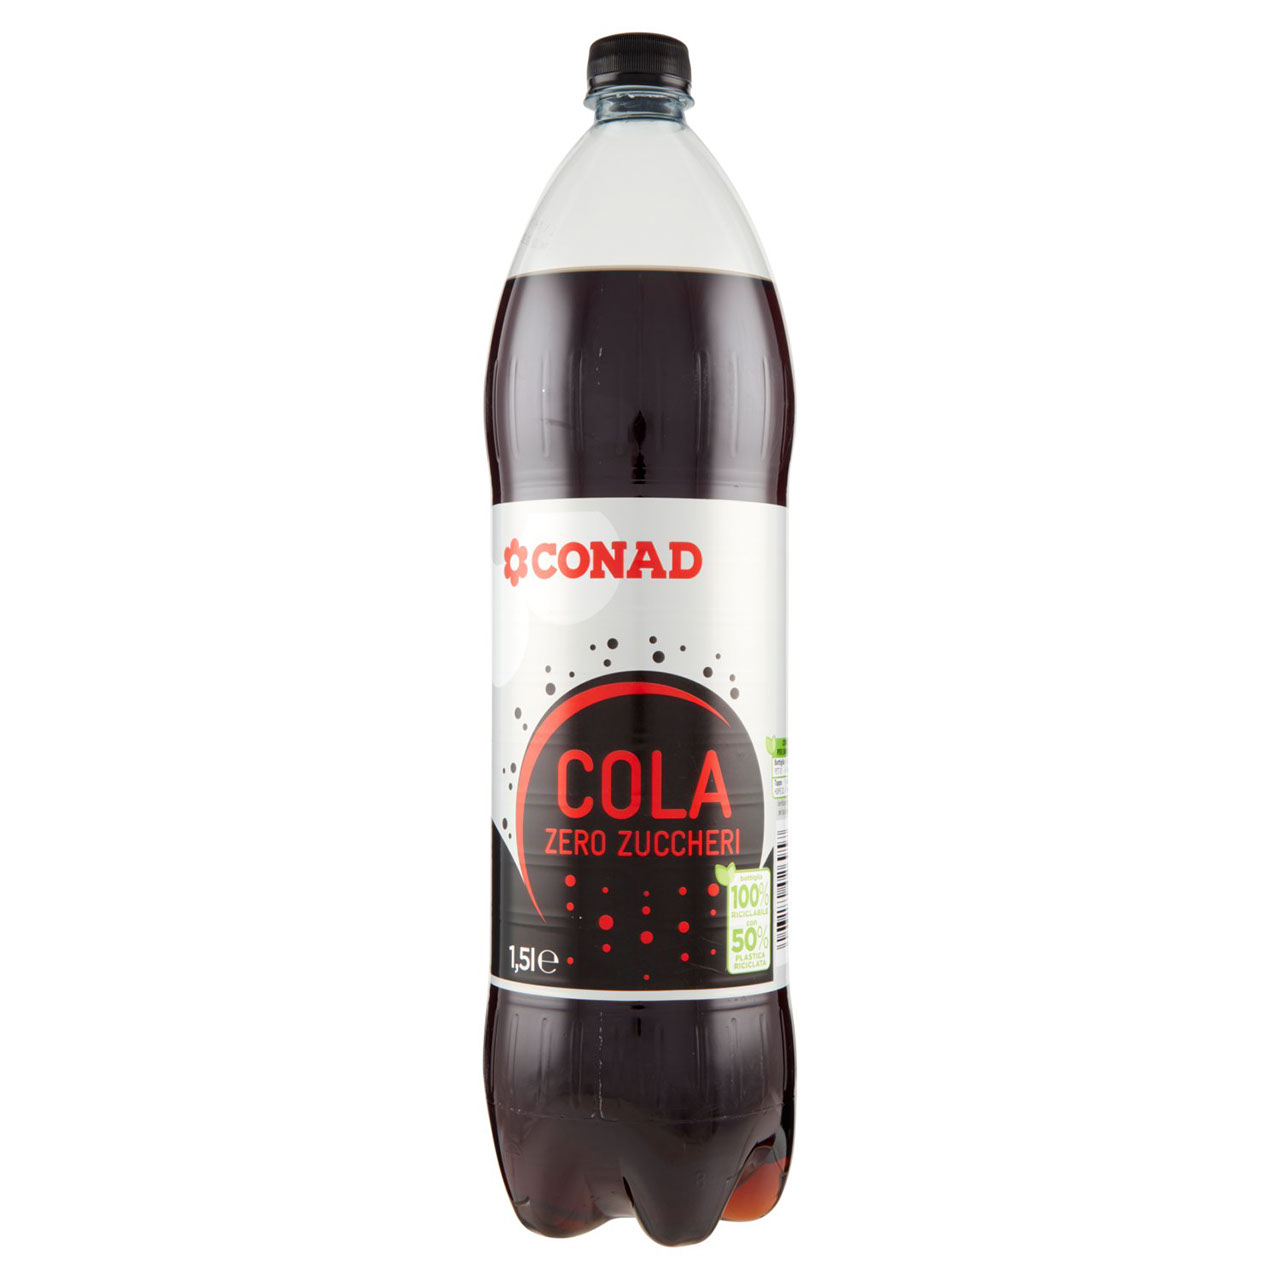 Cola Zero Zuccheri 1.5 l Conad in vendita online